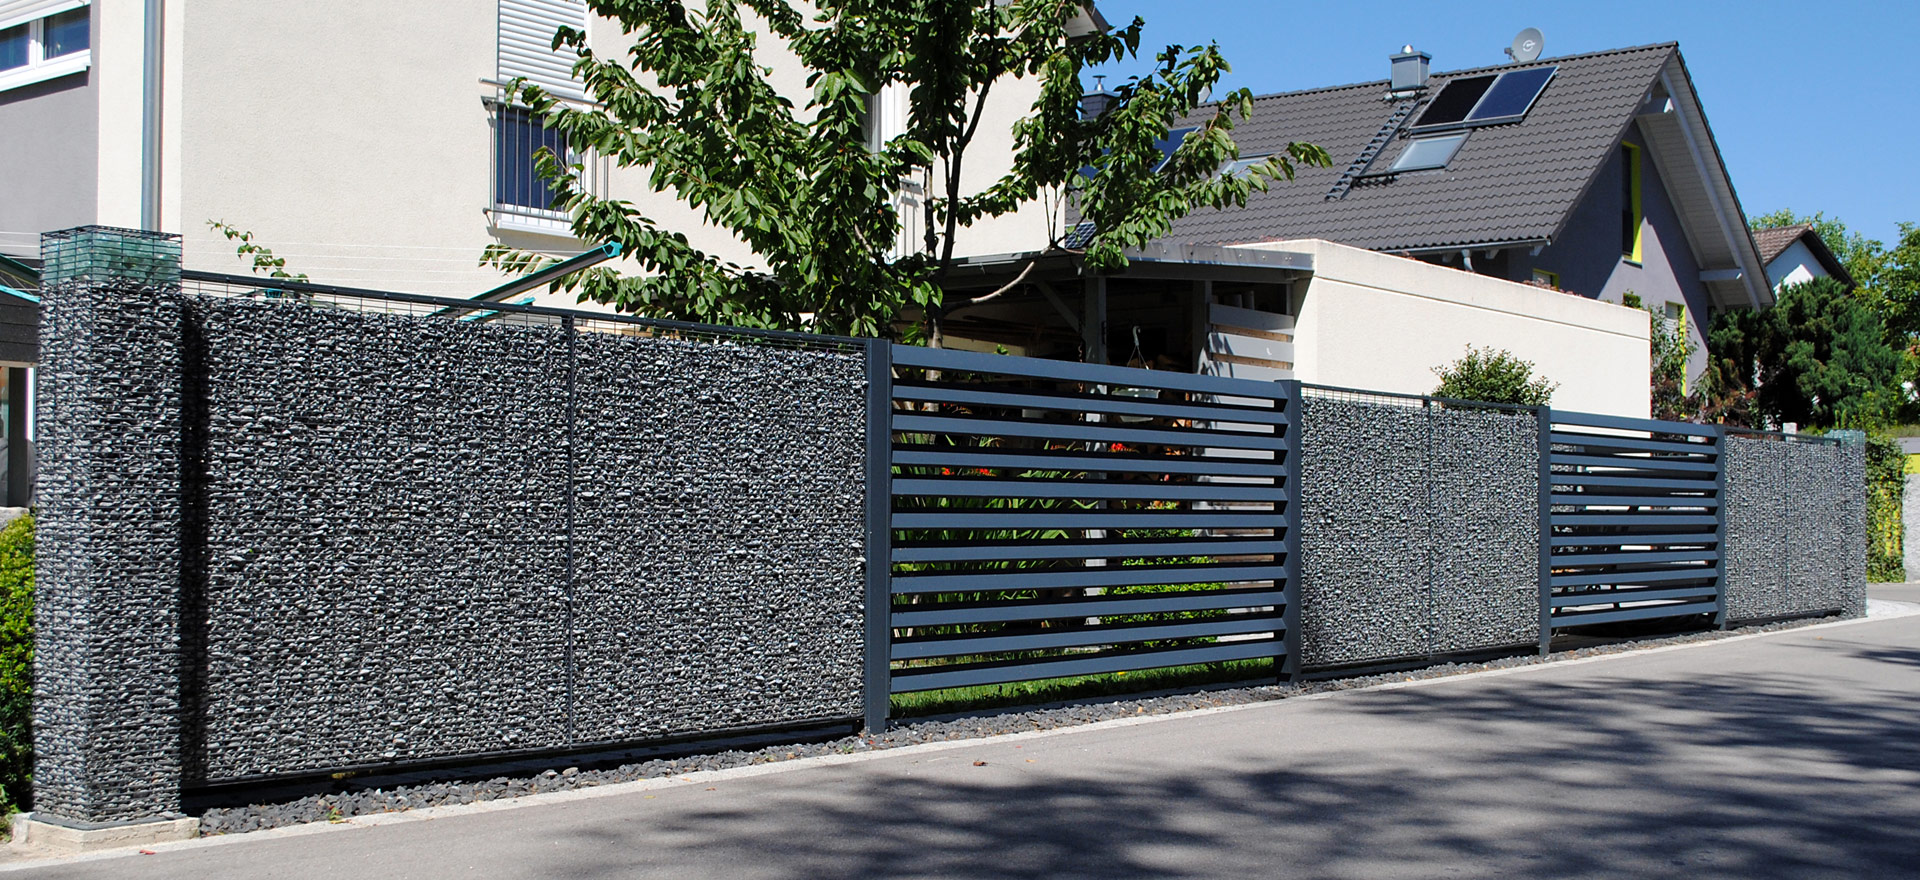 Moderner Zaun | Zaunsysteme aus Aluminium und Stahl, Zaunelemente aus